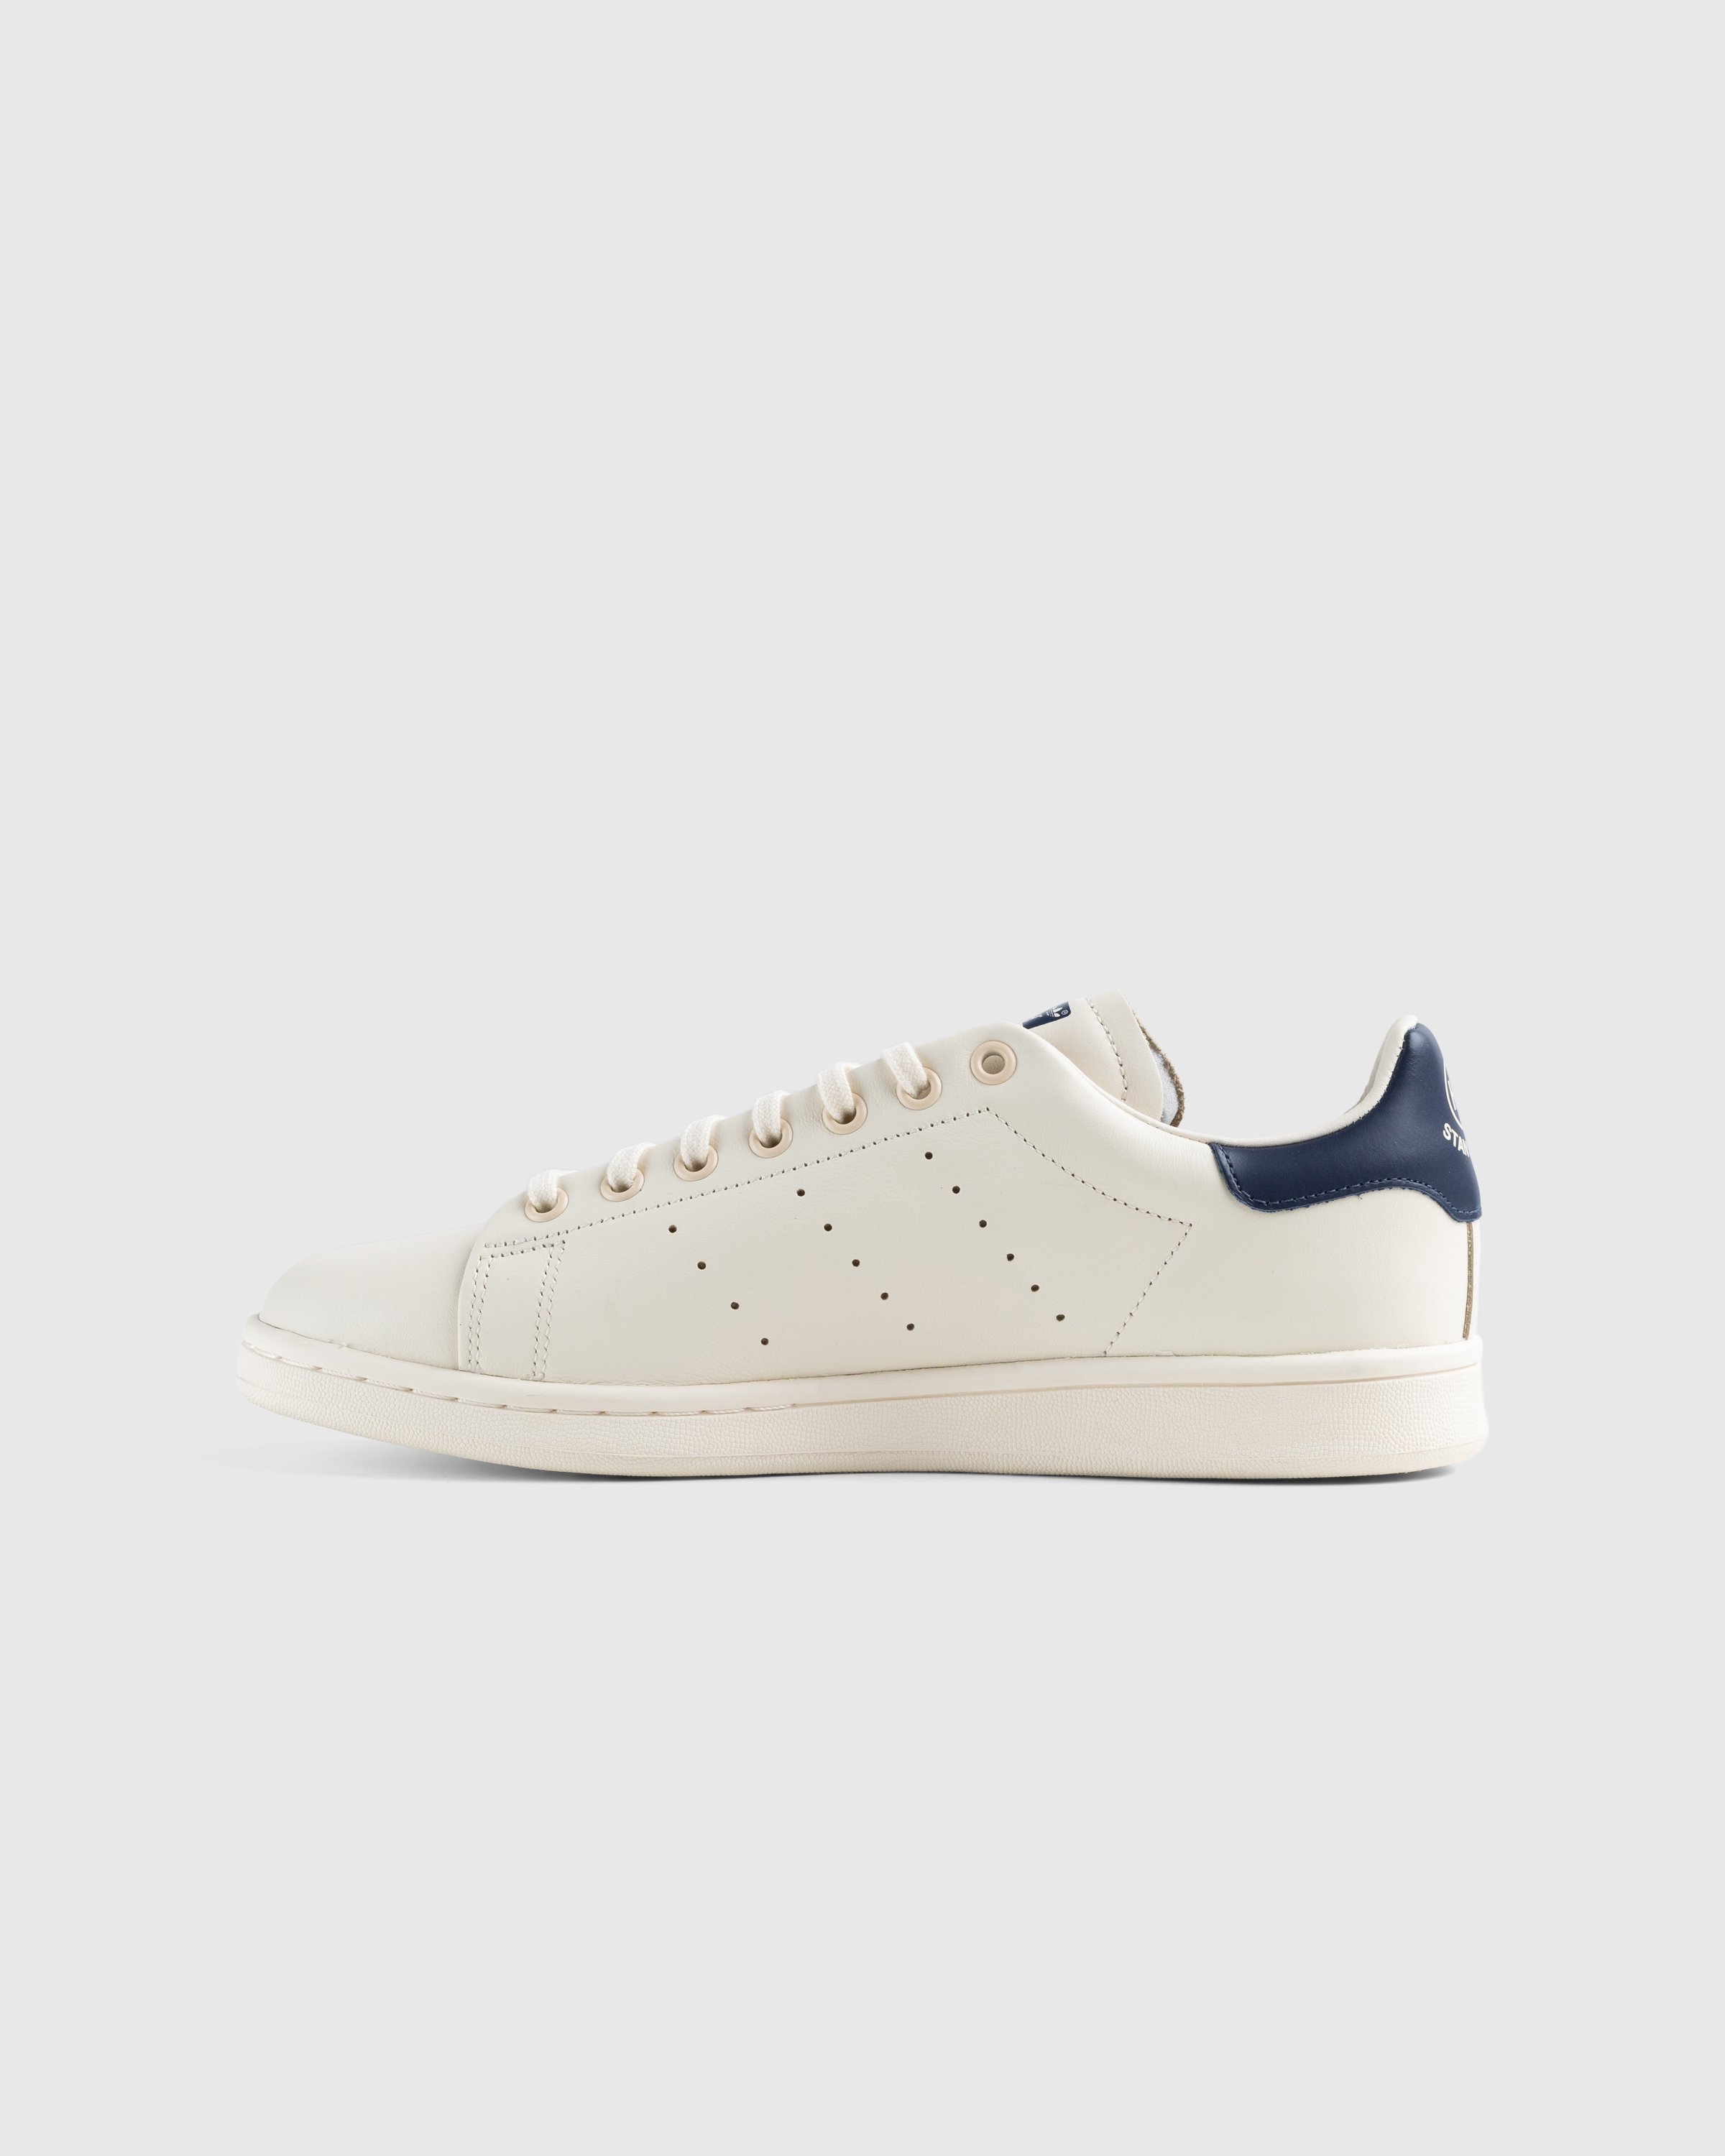 Adidas x Highsnobiety - Not In Paris Stan Smith Cream/Blue - Footwear - Beige - Image 2